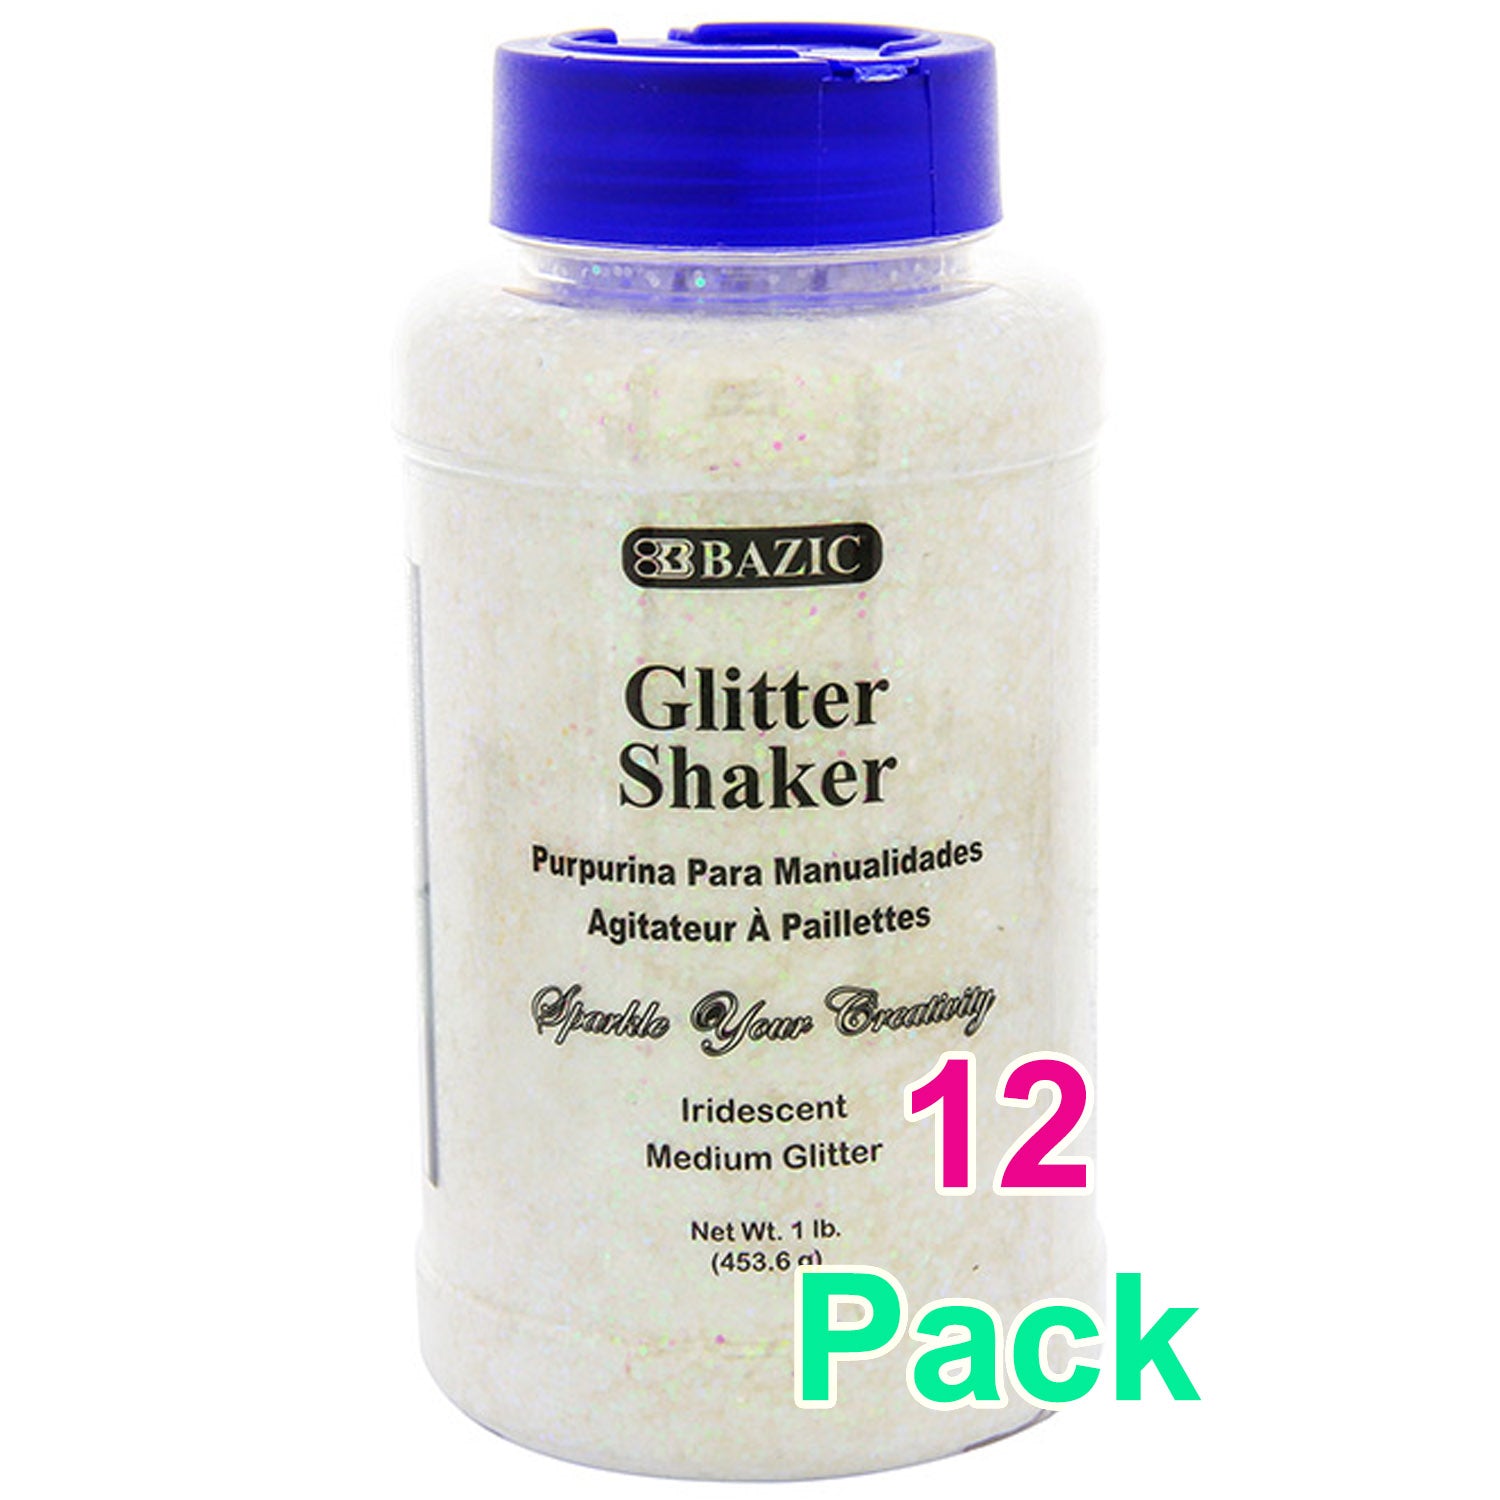 Creative Arts Craft Glitter, 16 Ounce Bottle Iridescent